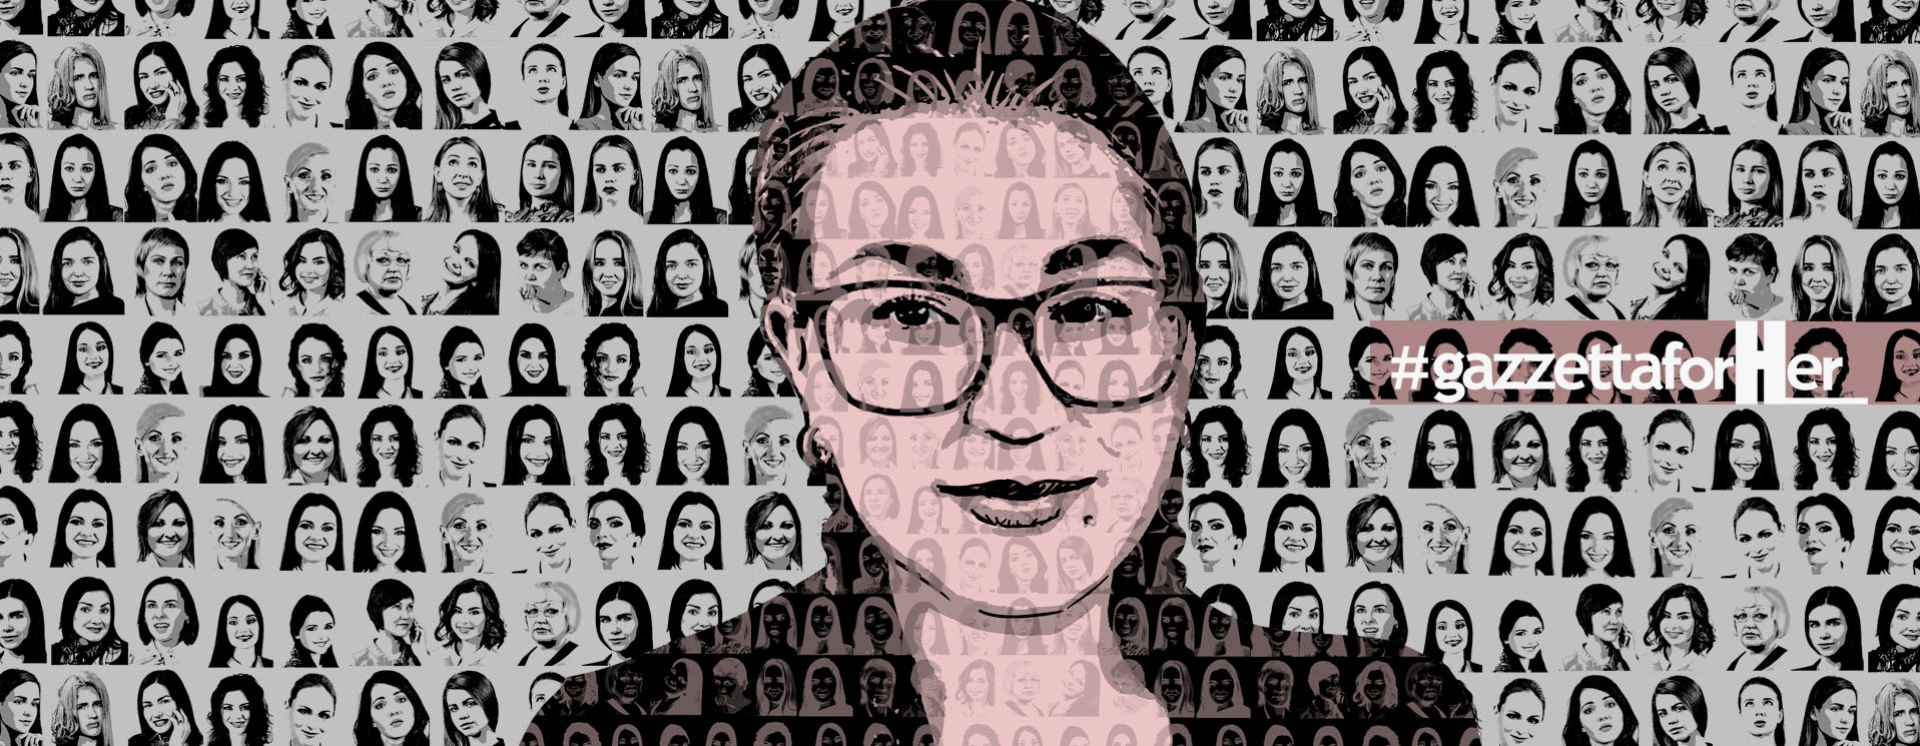 Γιάννης Τοπαλούδης στο Gazzetta: «Στο πρόσωπο της κάθε γυναίκας βλέπουμε το πρόσωπο της Ελένης μας» (podcast)